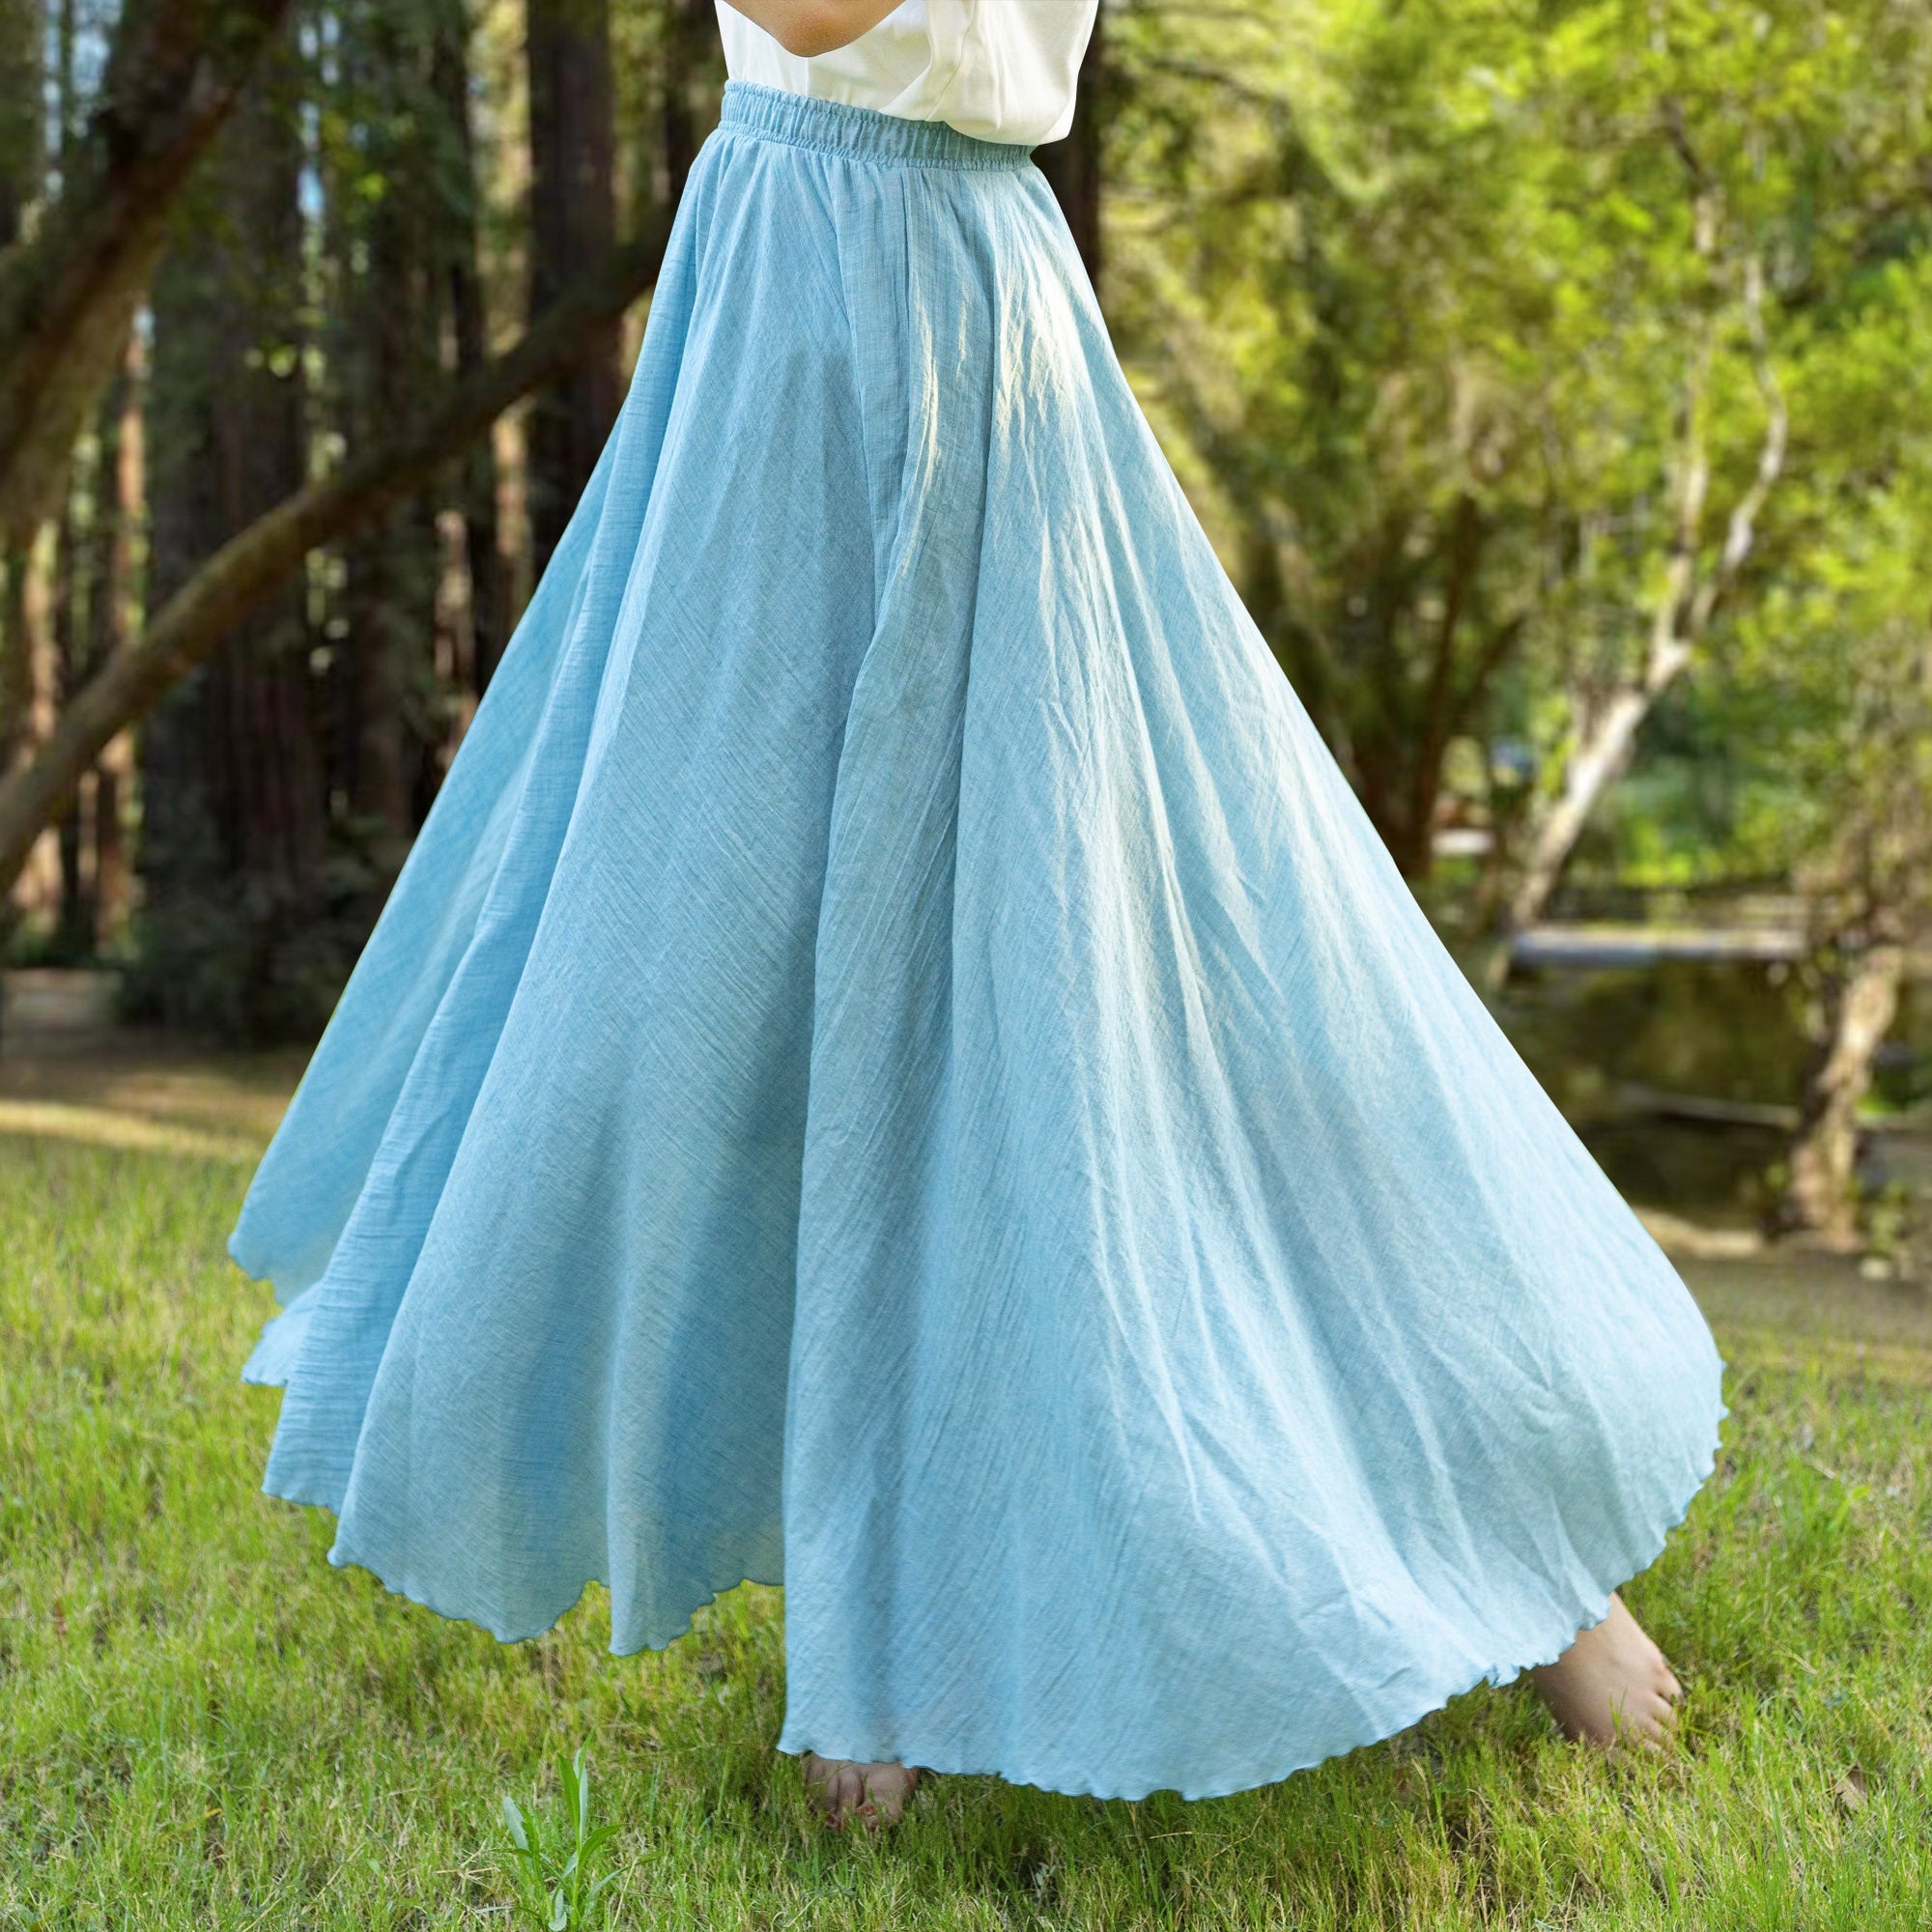 Cotton linen skirt soft and flowing linen skirt travel skirt beach skirt gift for her denim blue，Pockets and waist can be customized